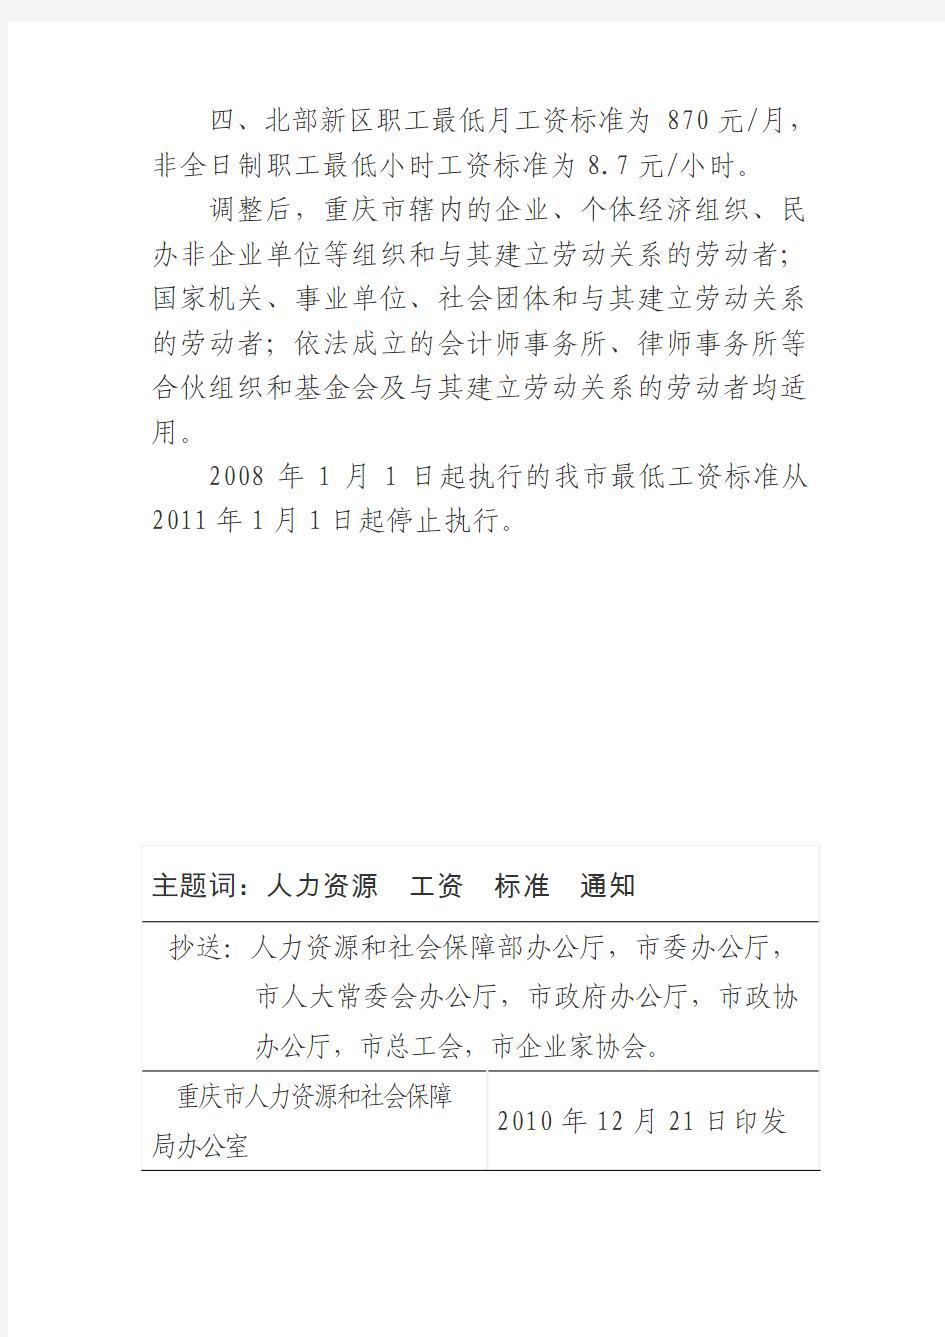 重庆市人力资源和社会保障局关于发布重庆市最低工资标准的通知(渝人社发[2010]272号